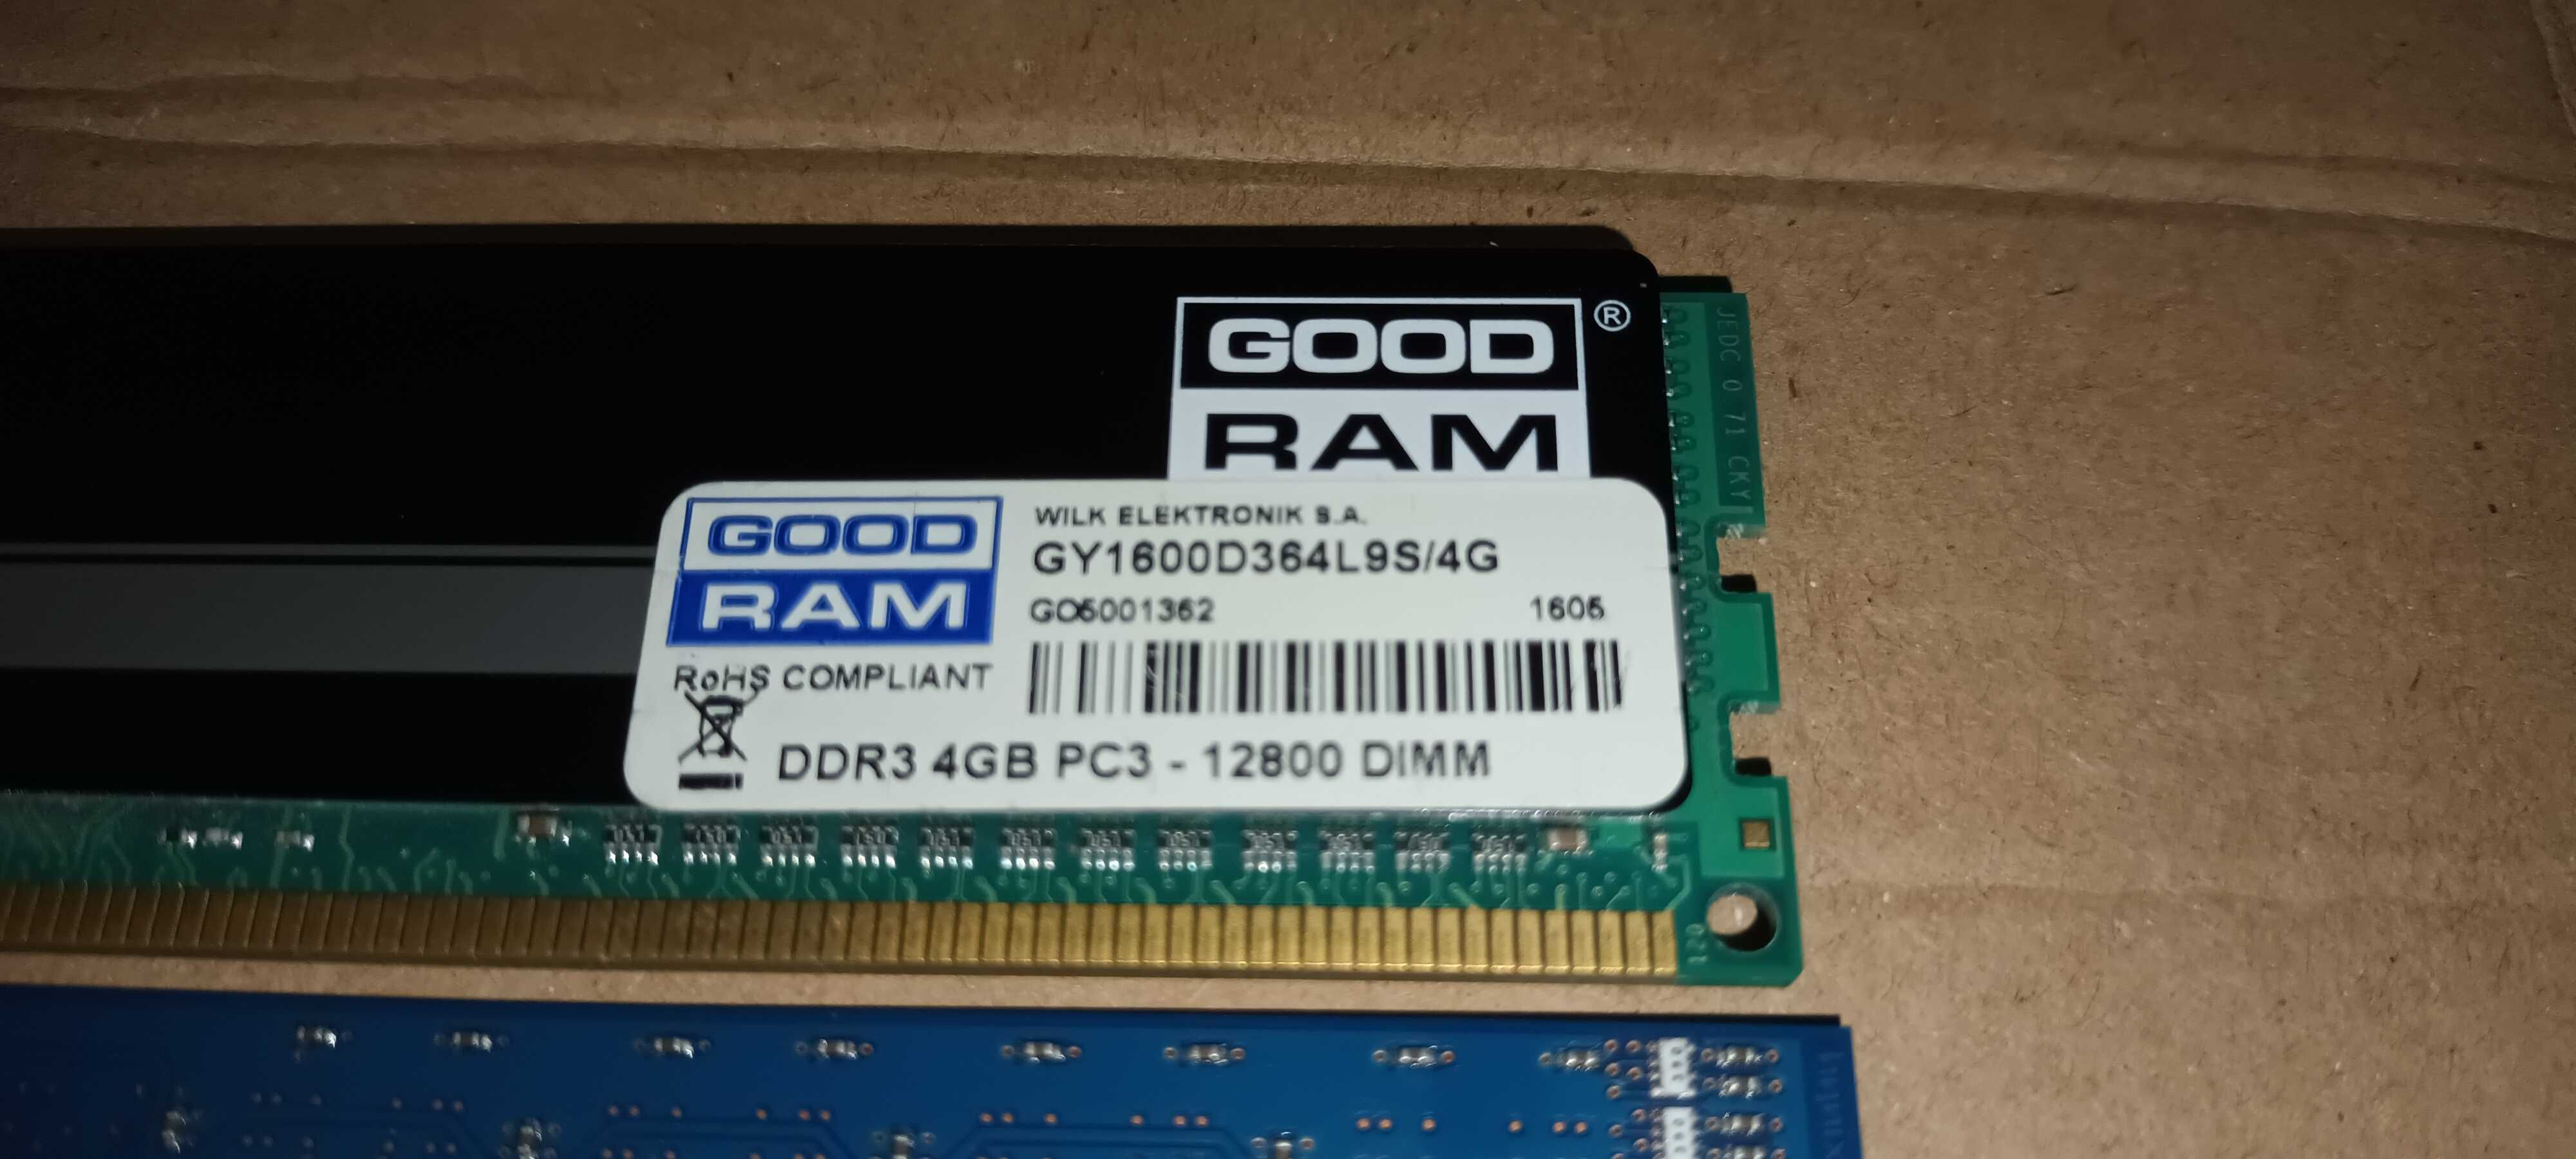 DDR3 4GB PC3-12800 DIMM GoodRam